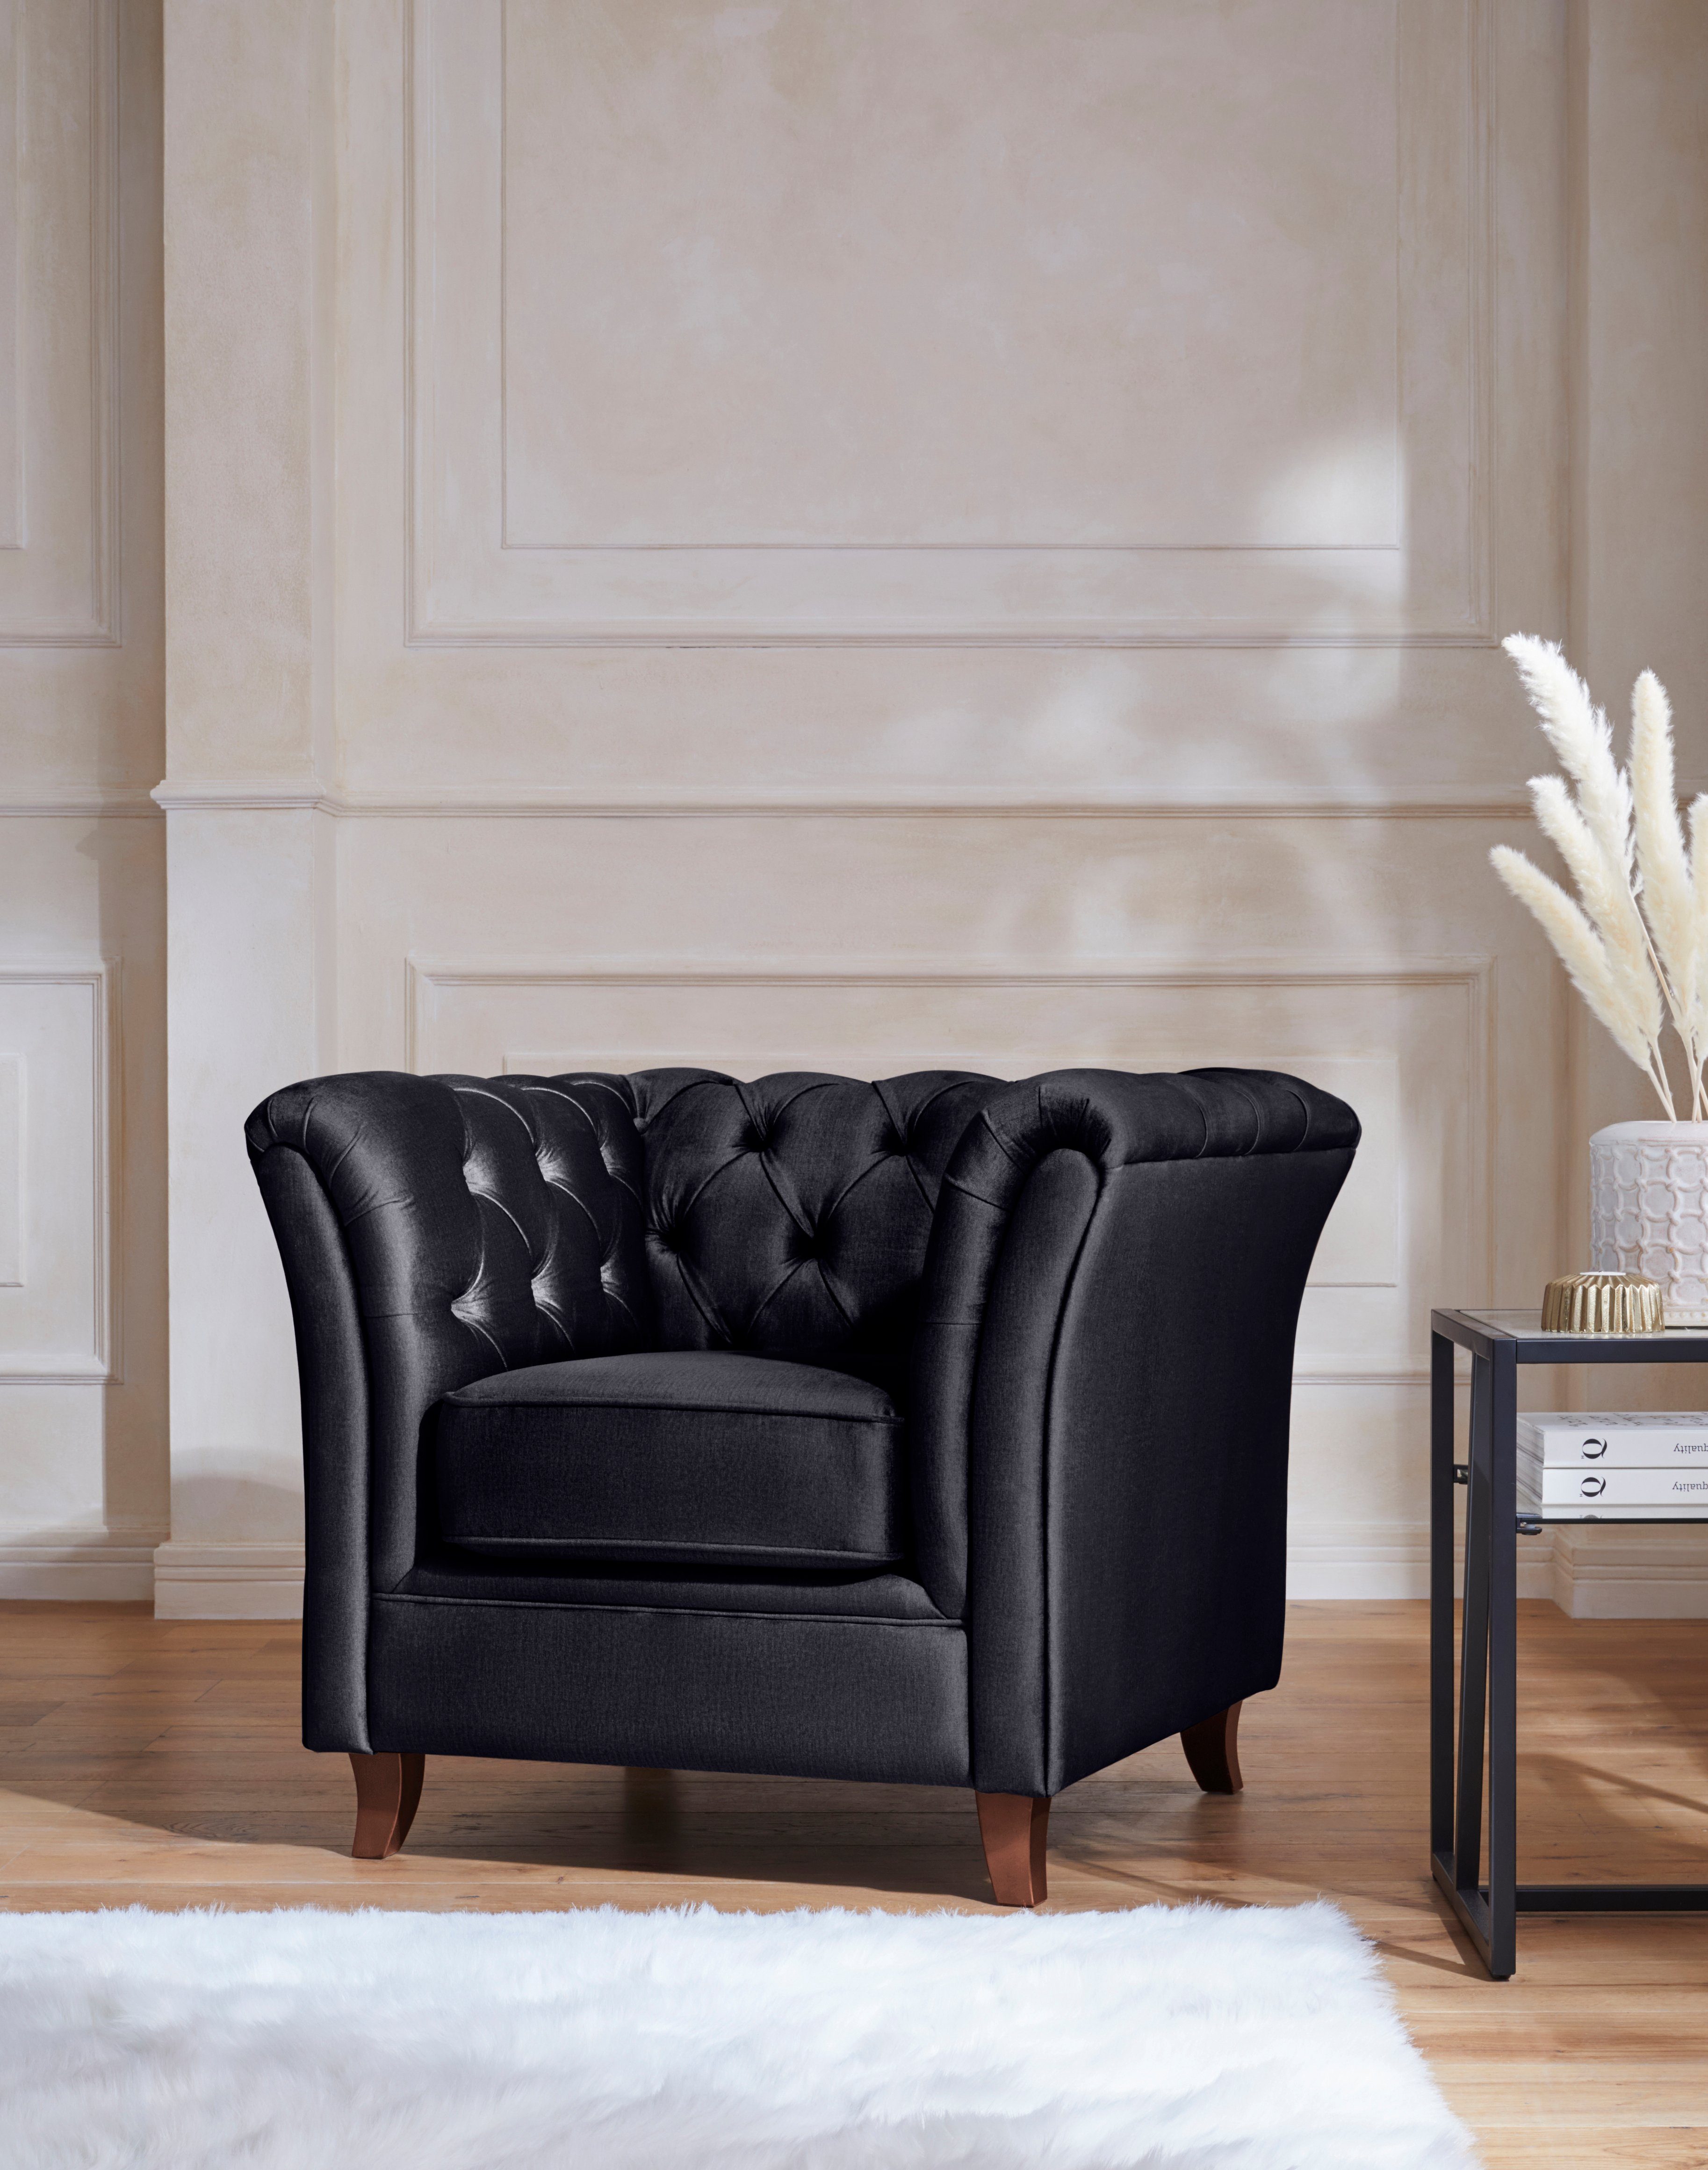 Home affaire Chesterfield-fauteuil Reims met echte chesterfield-capitonnage, uitstekende verwerking, fluwelige look met changerend effect